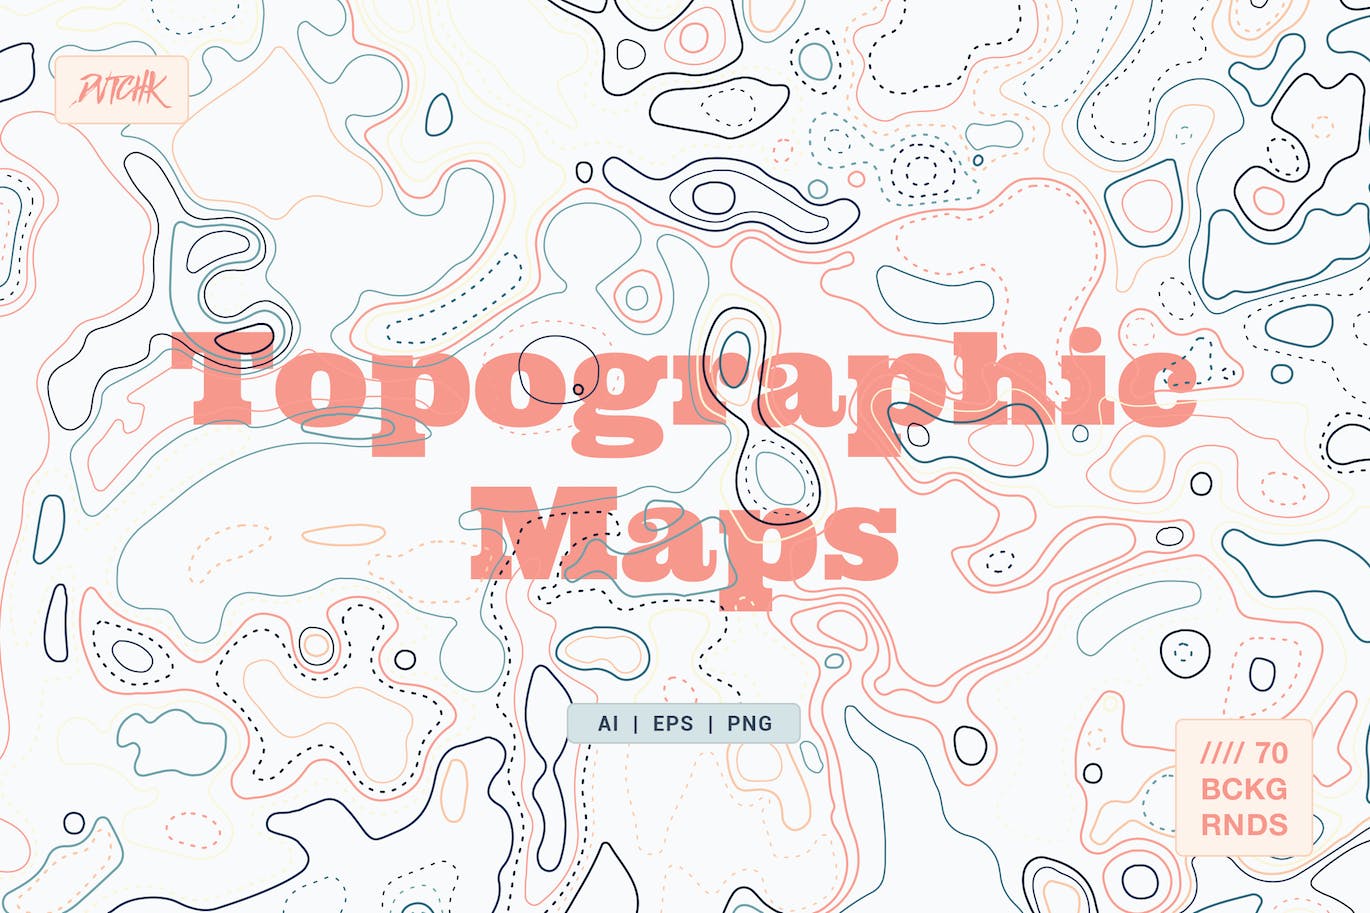 彩色矢量地形图背景 Topographic Maps 图片素材 第1张